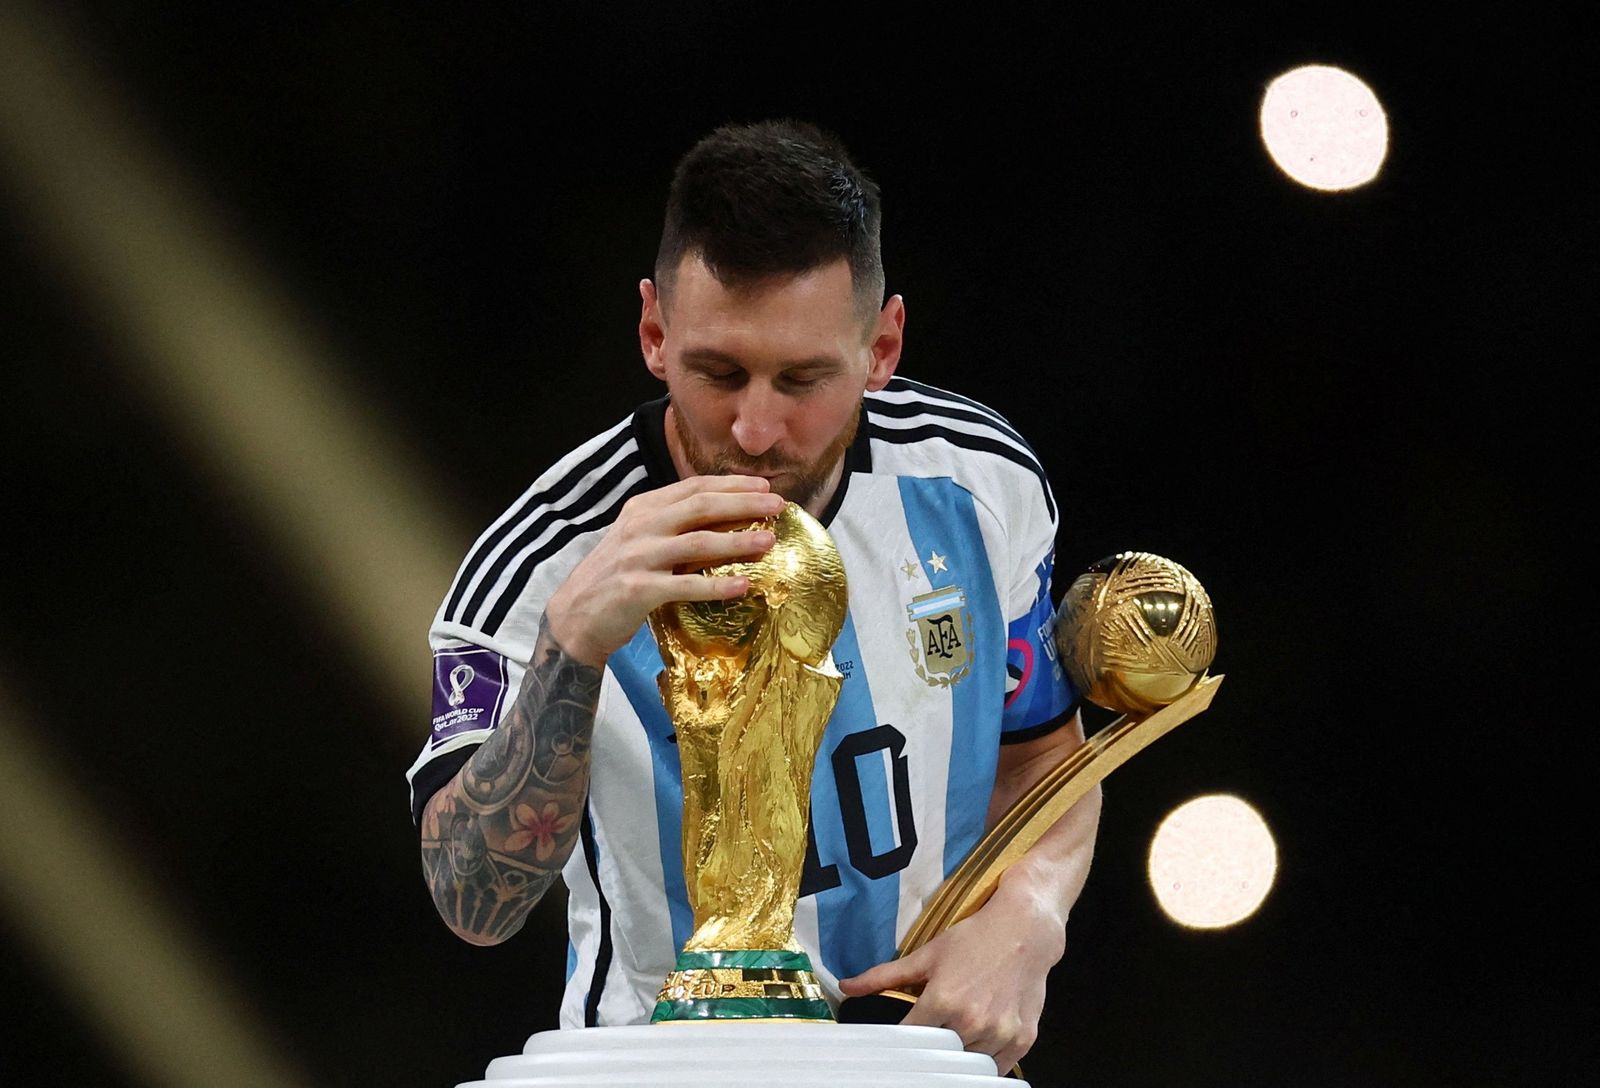 ليونيل ميسي يُقبل كأس العالم بعد تتويج الأرجنتين باللقب على حساب فرنسا - 18 ديسمبر 2022